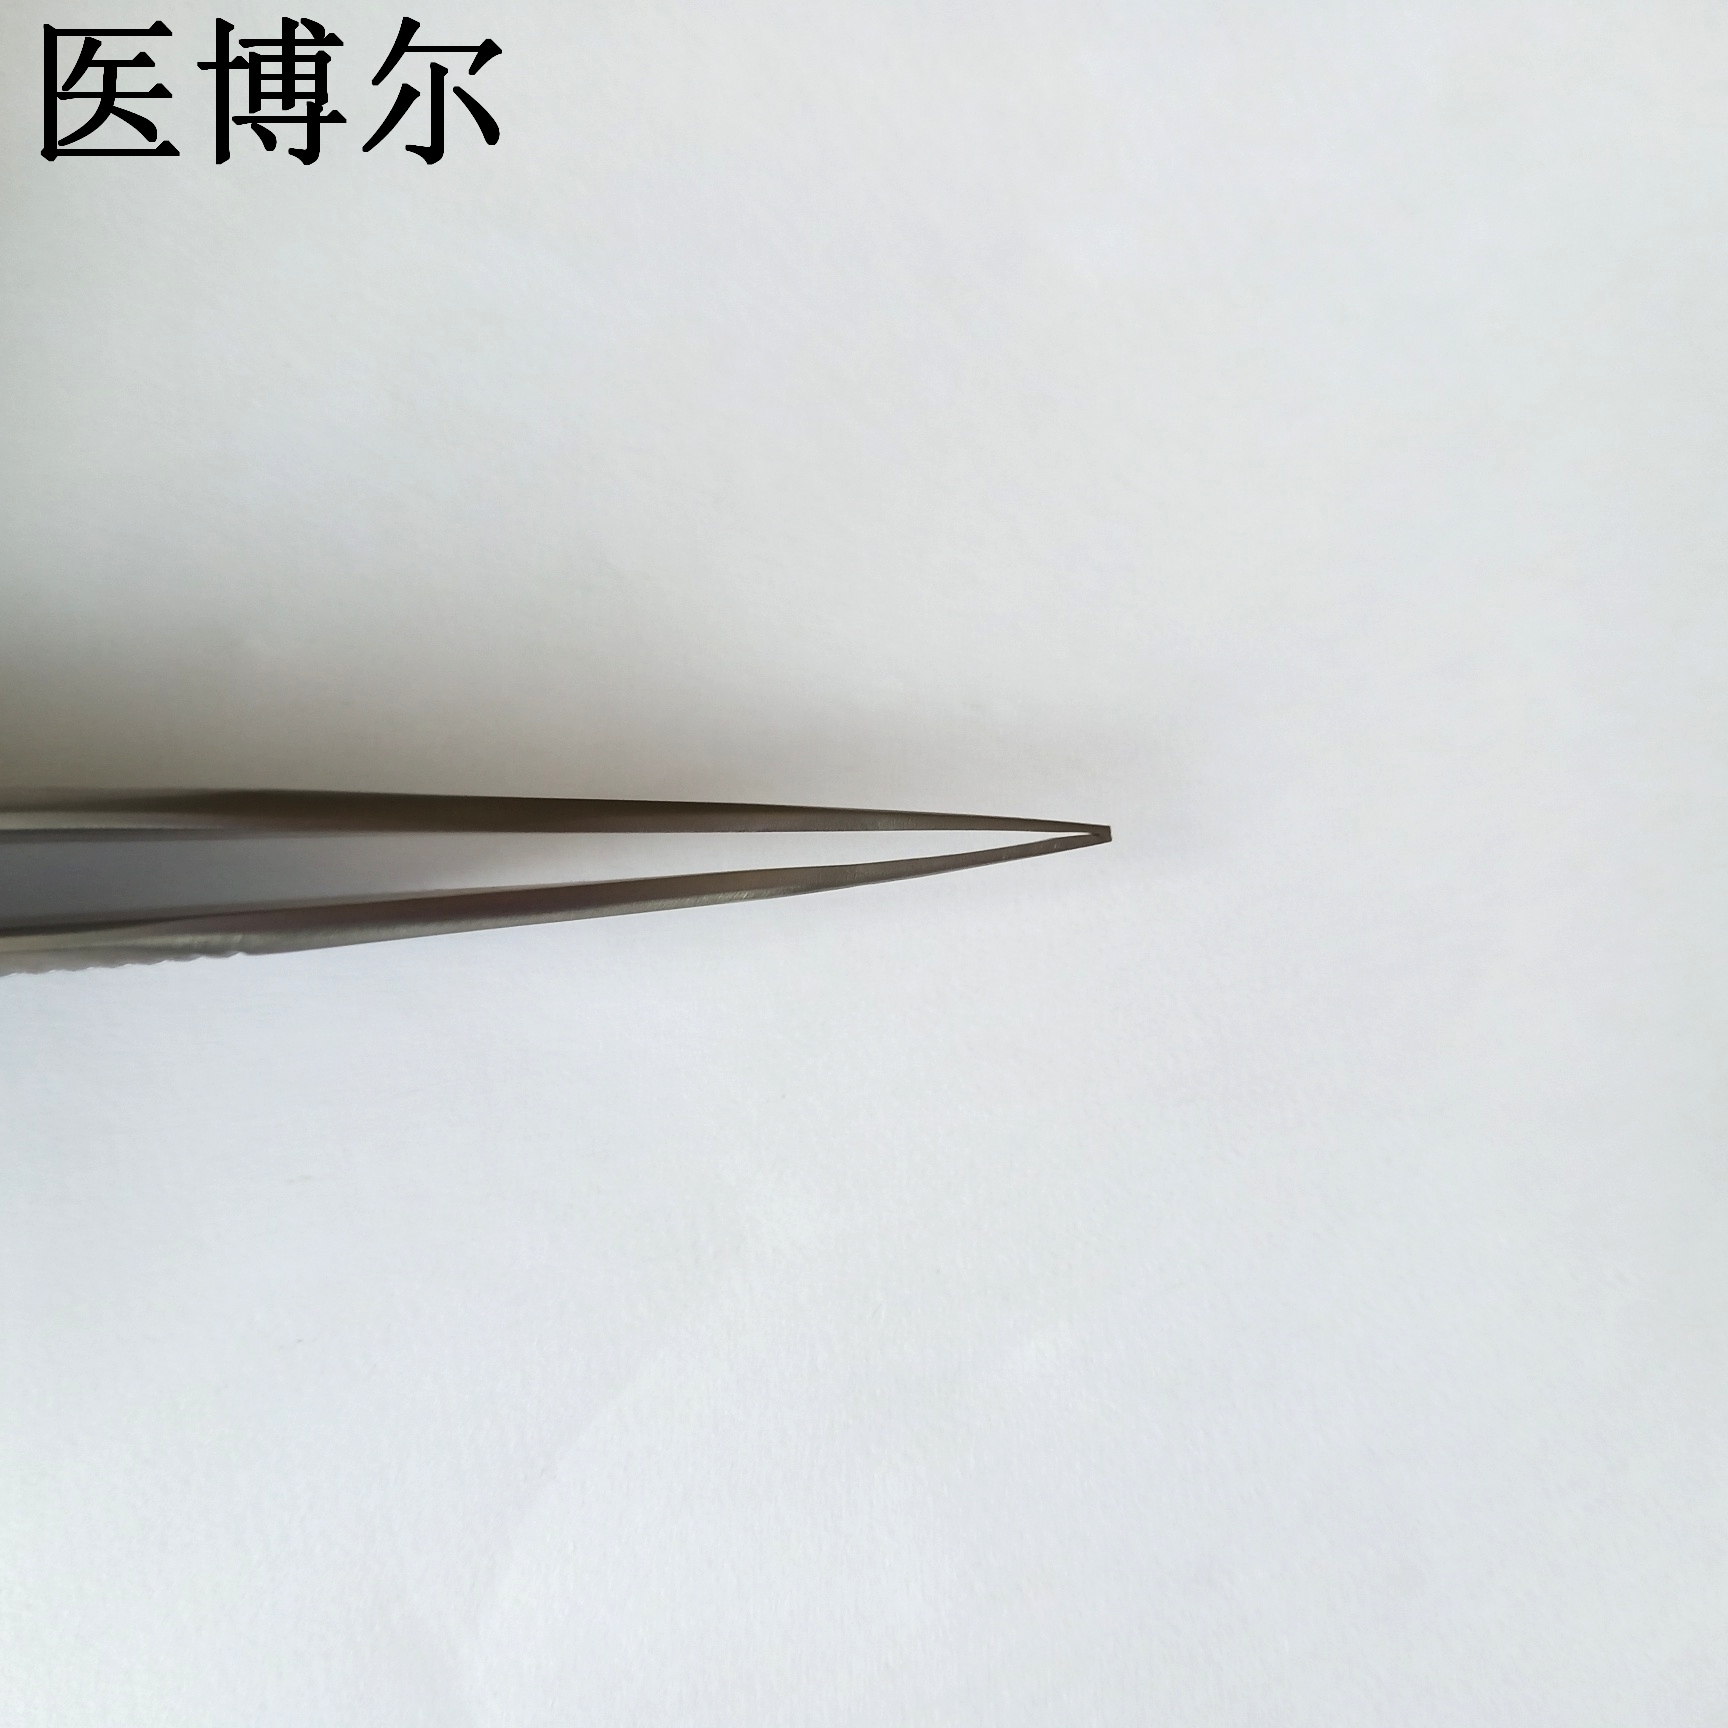 14cm整形镊0.5齿 (8)_看图王.jpg